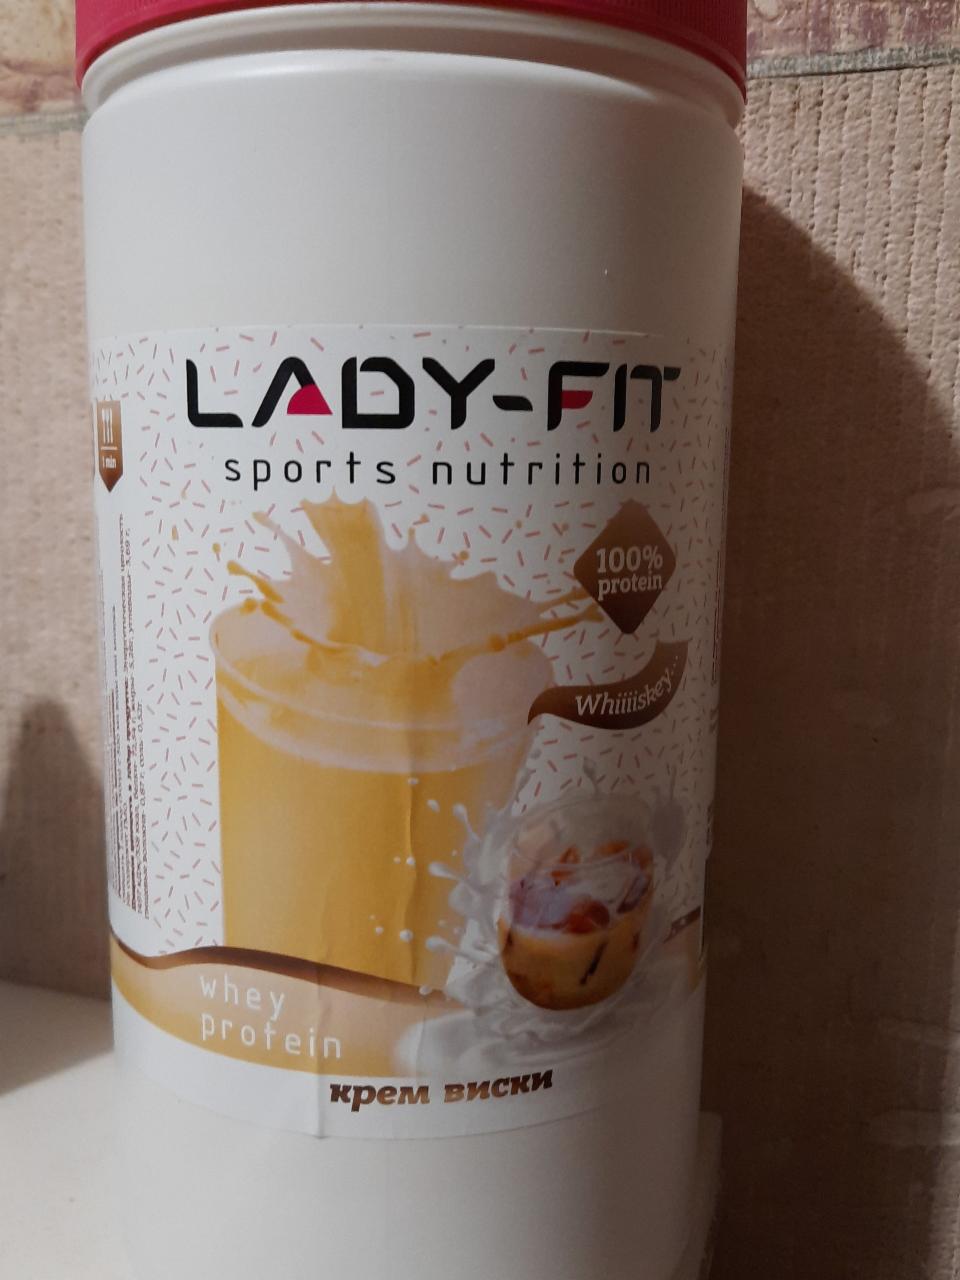 Фото - sports nutrition крем виски Lady-fit